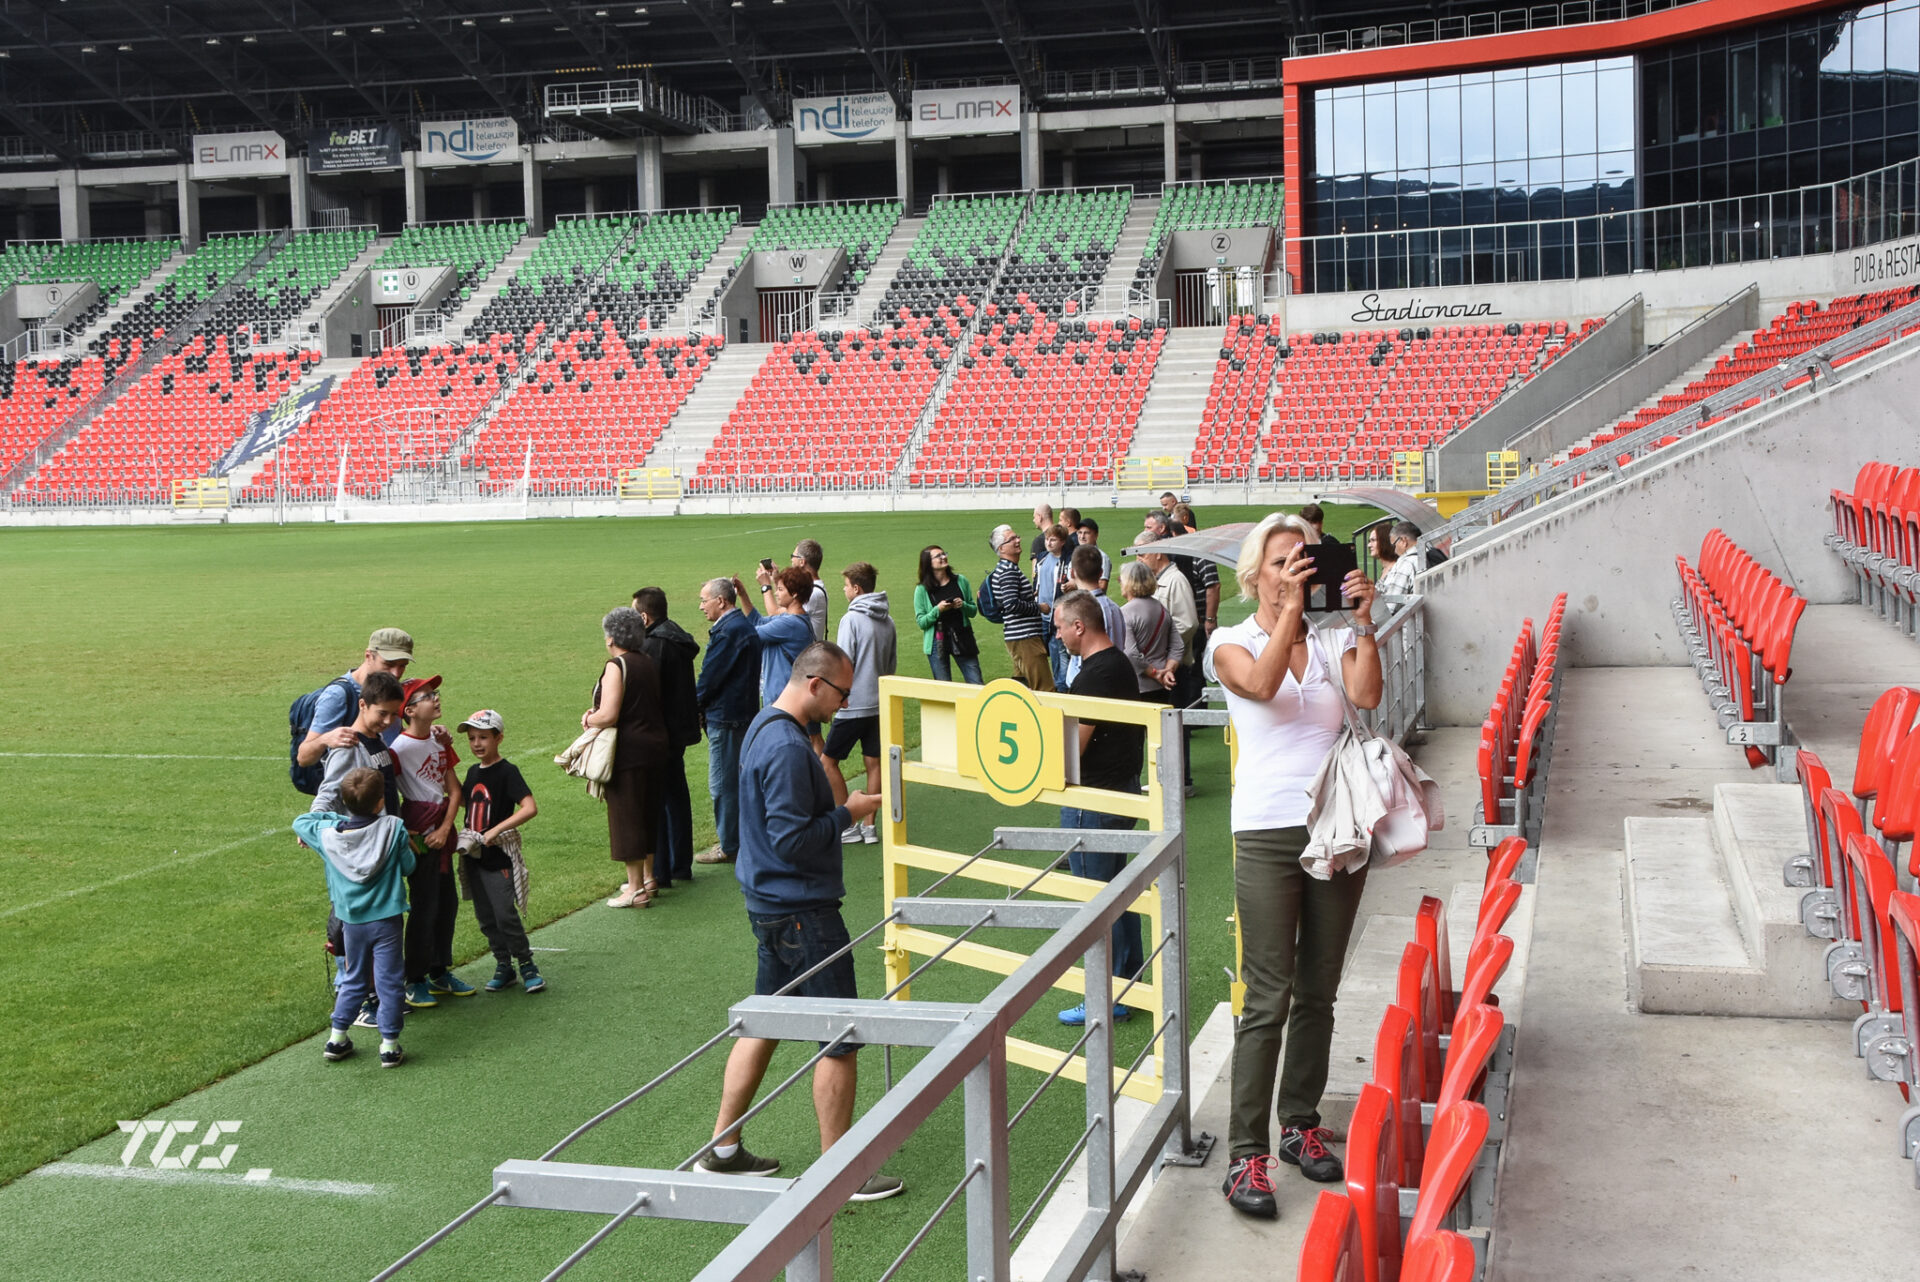 Poznajmy się na sportowo - zwiedzanie stadionu dla najmłodszych w języku ukraińskim. Tychy